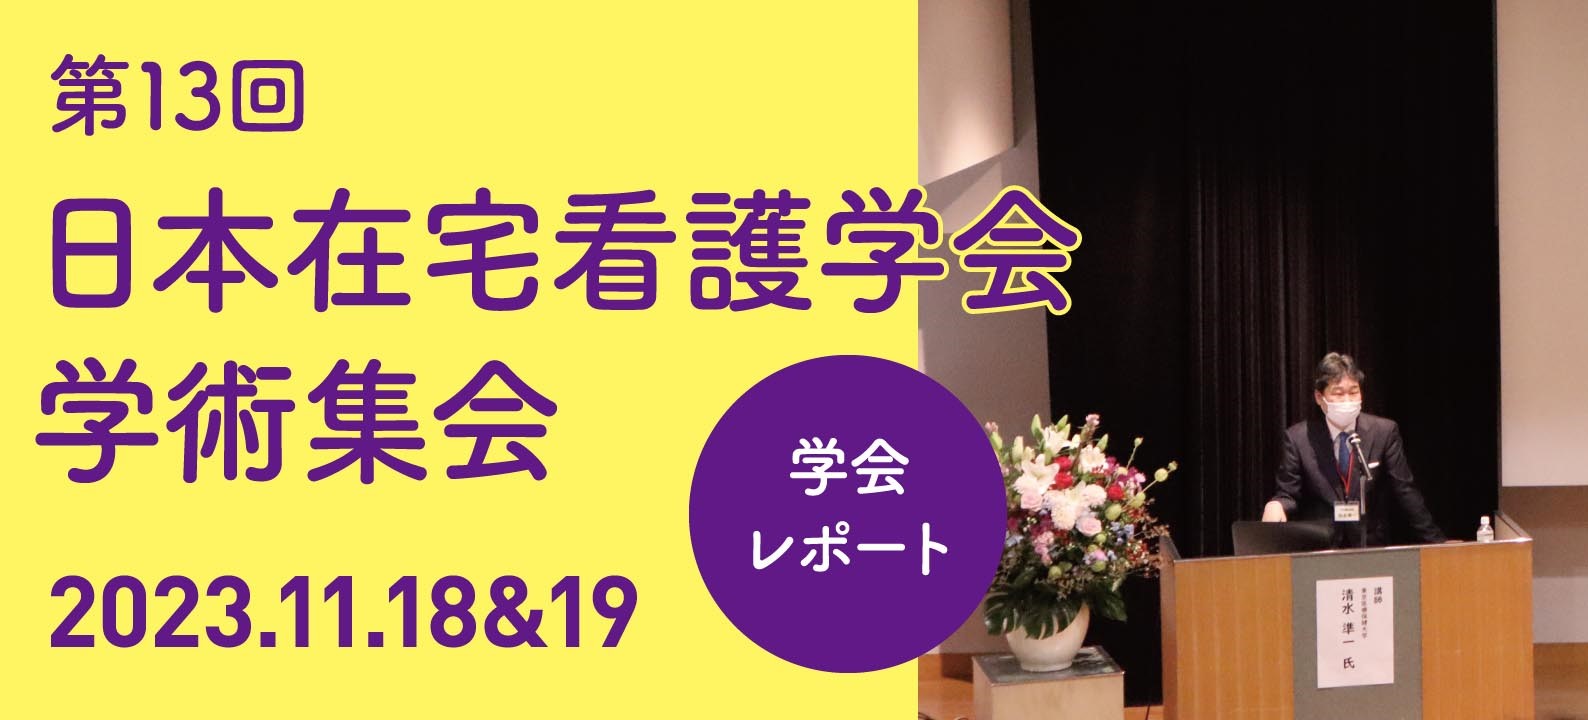 【学会レポート】第13回日本在宅看護学会学術集会 「在宅看護、すぐそばに在る」